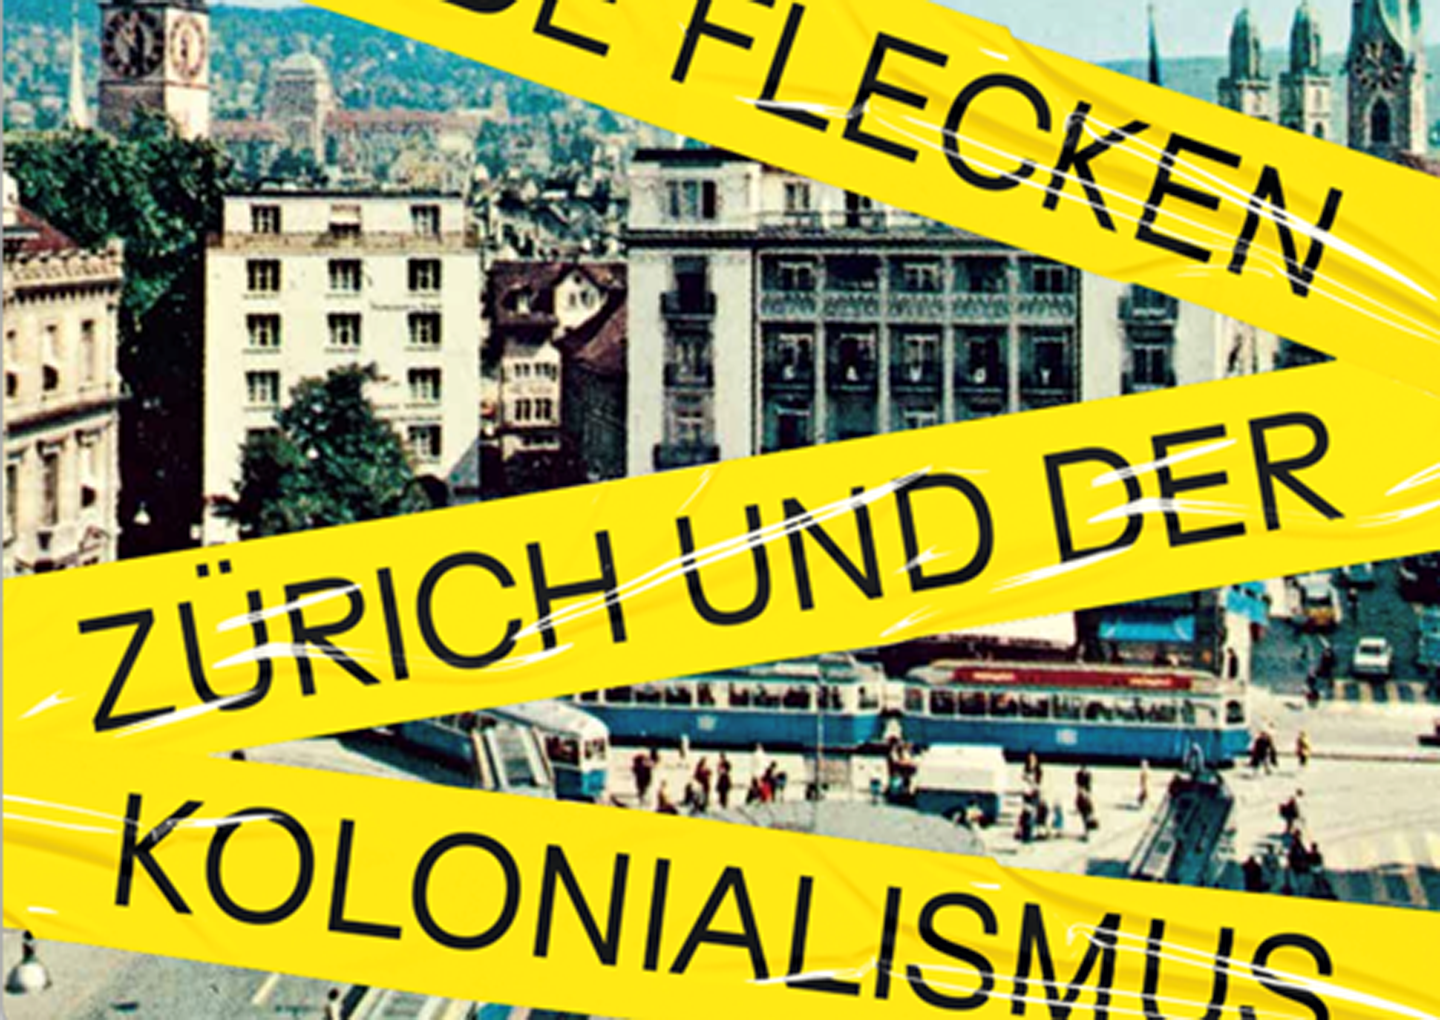 Blinde Flecken - Zürich und der Kolonialismus